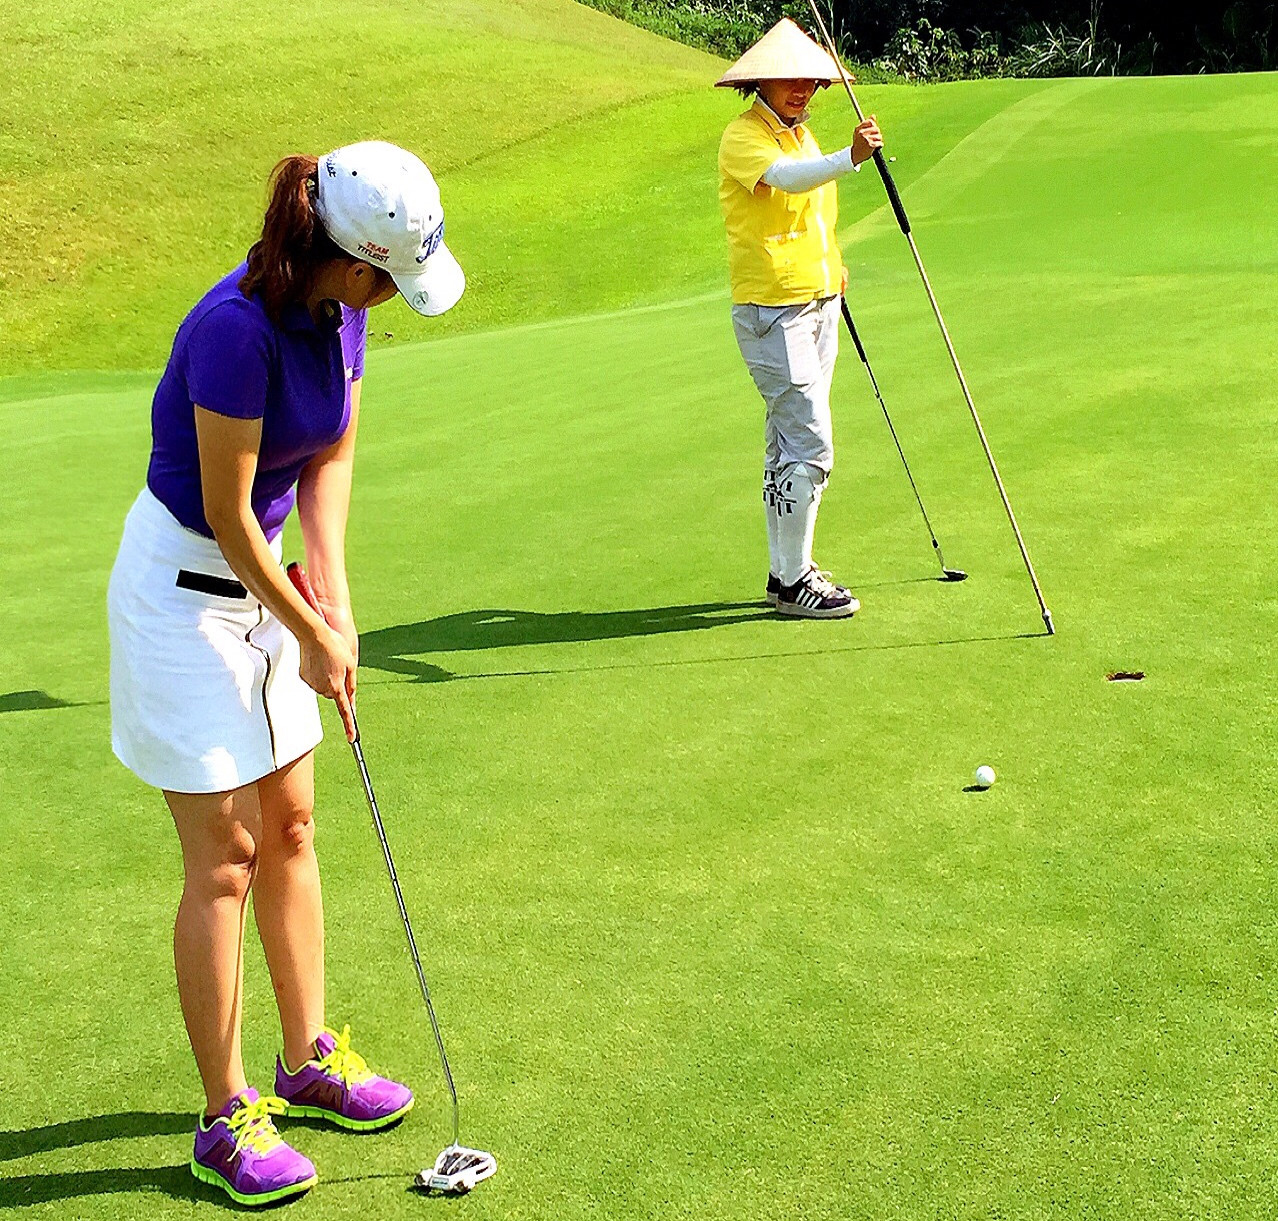 Phụ nữ chơi golf: Phải thật lộng lẫy khi lên sân - Hình 7